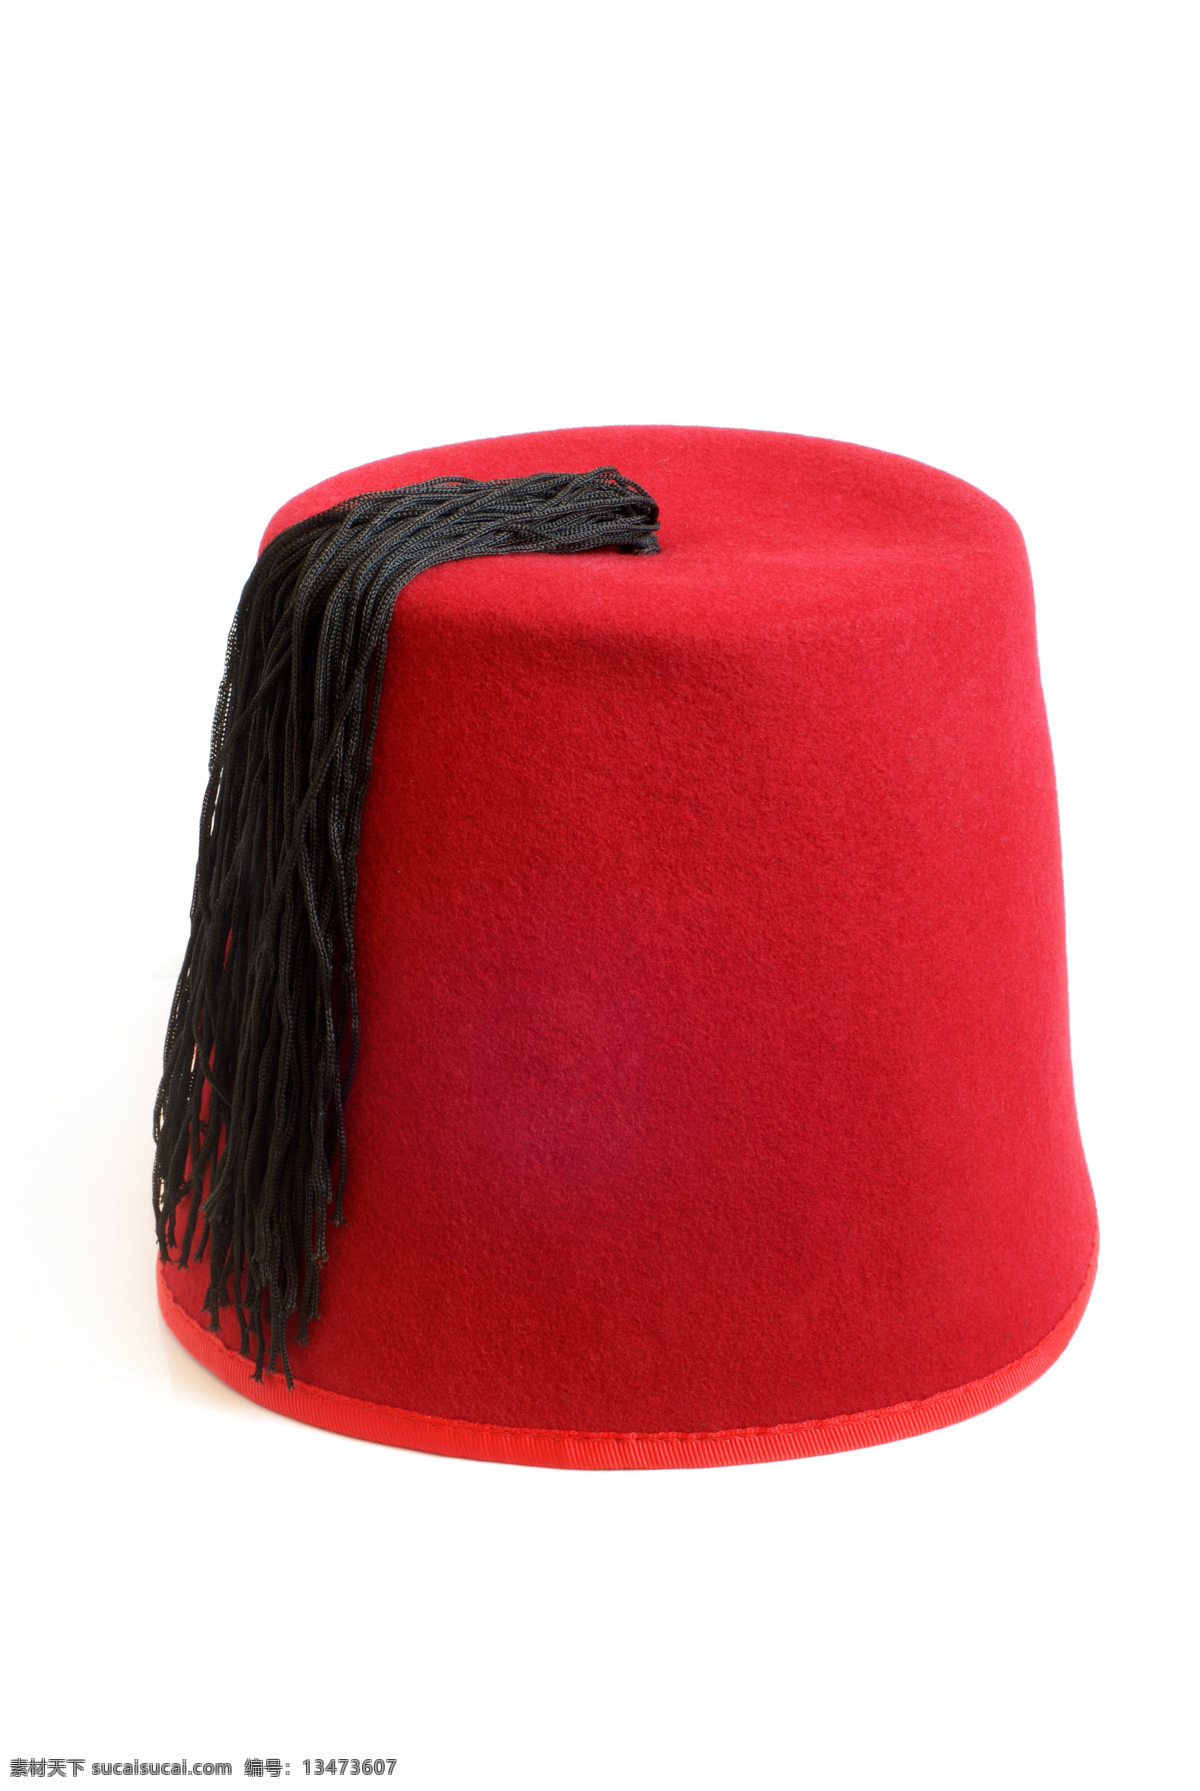 红色 帽子 红色帽子 黑色吊穗 土耳其 国家 城市风光 环境家居